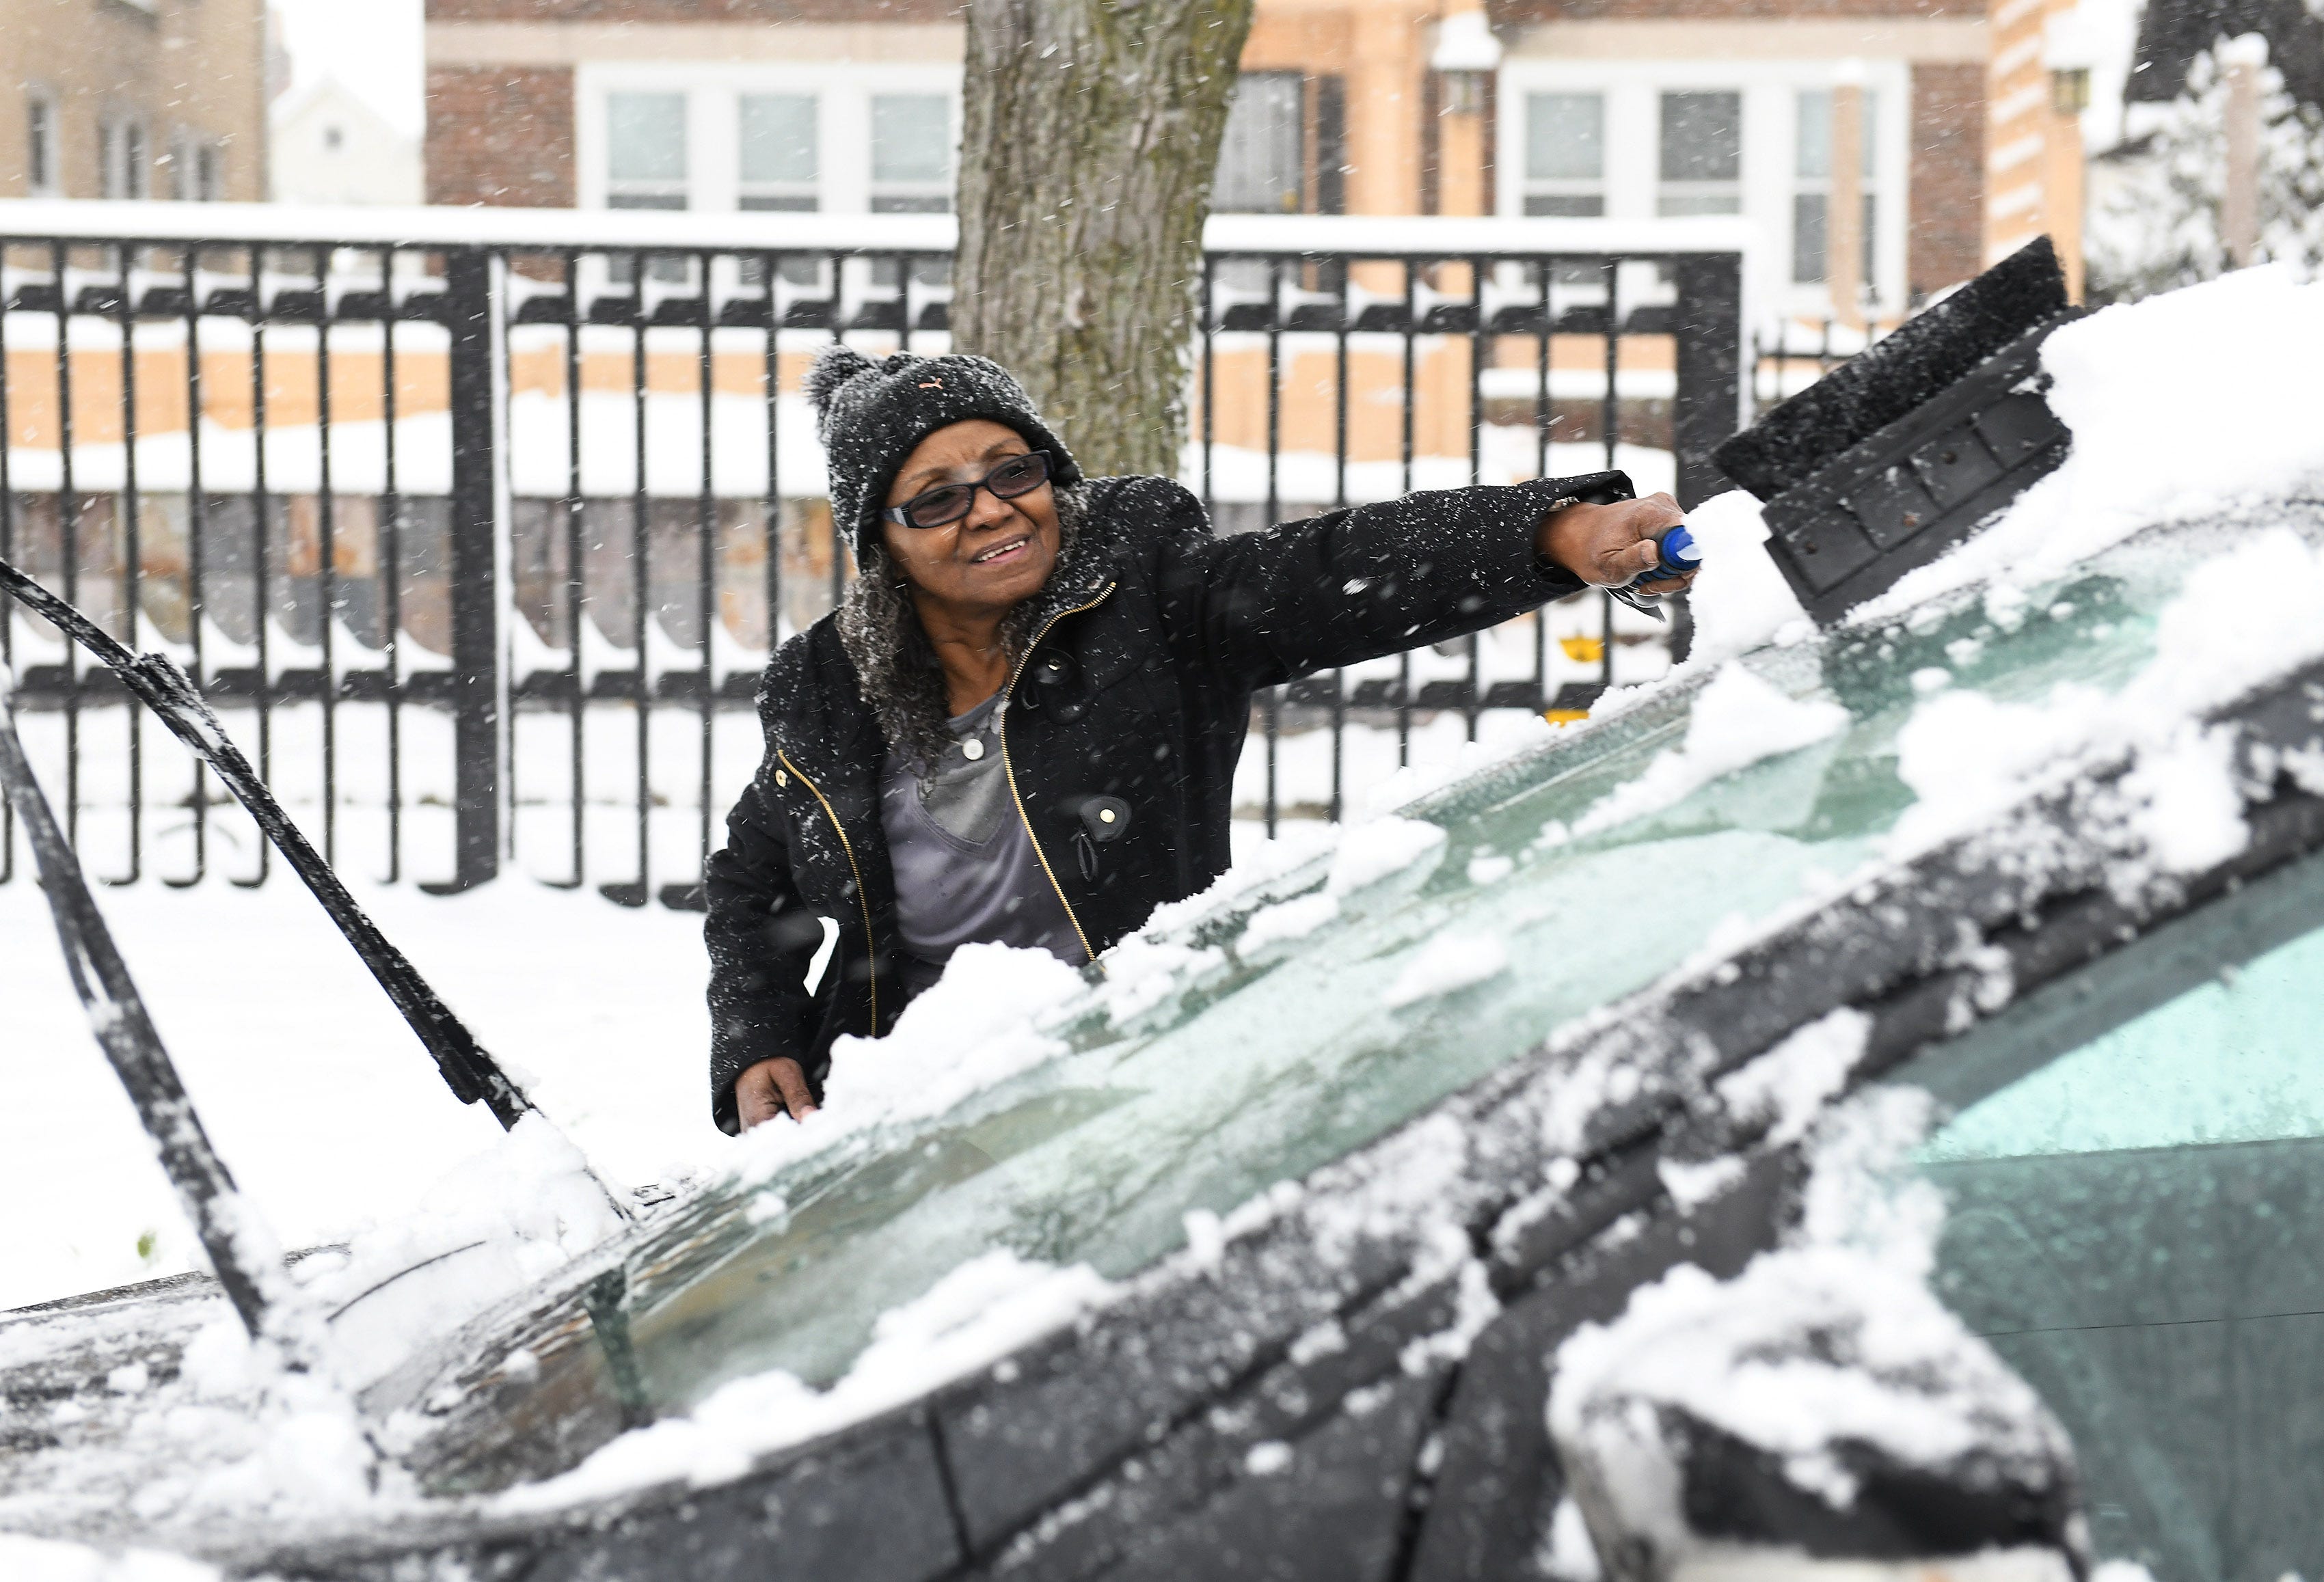 Harapkan jalan licin karena salju menumpuk pada hari Sabtu untuk pertama kalinya